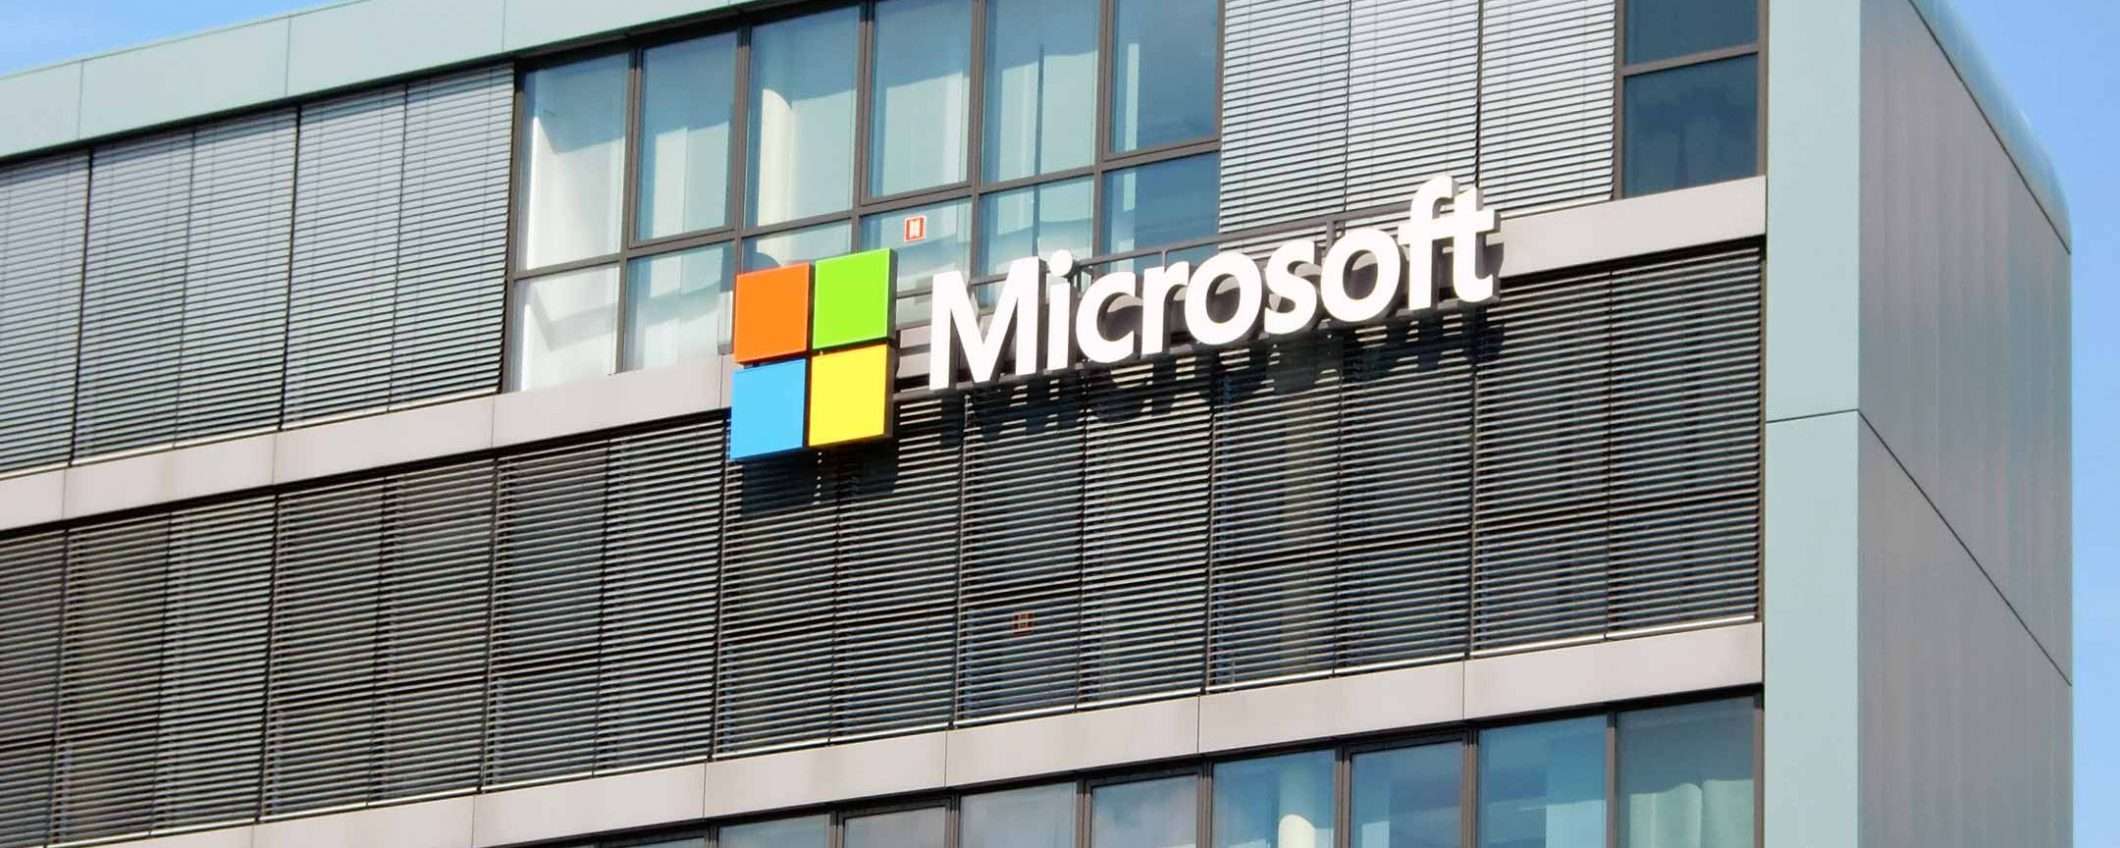 Microsoft su riconoscimento facciale e polizia